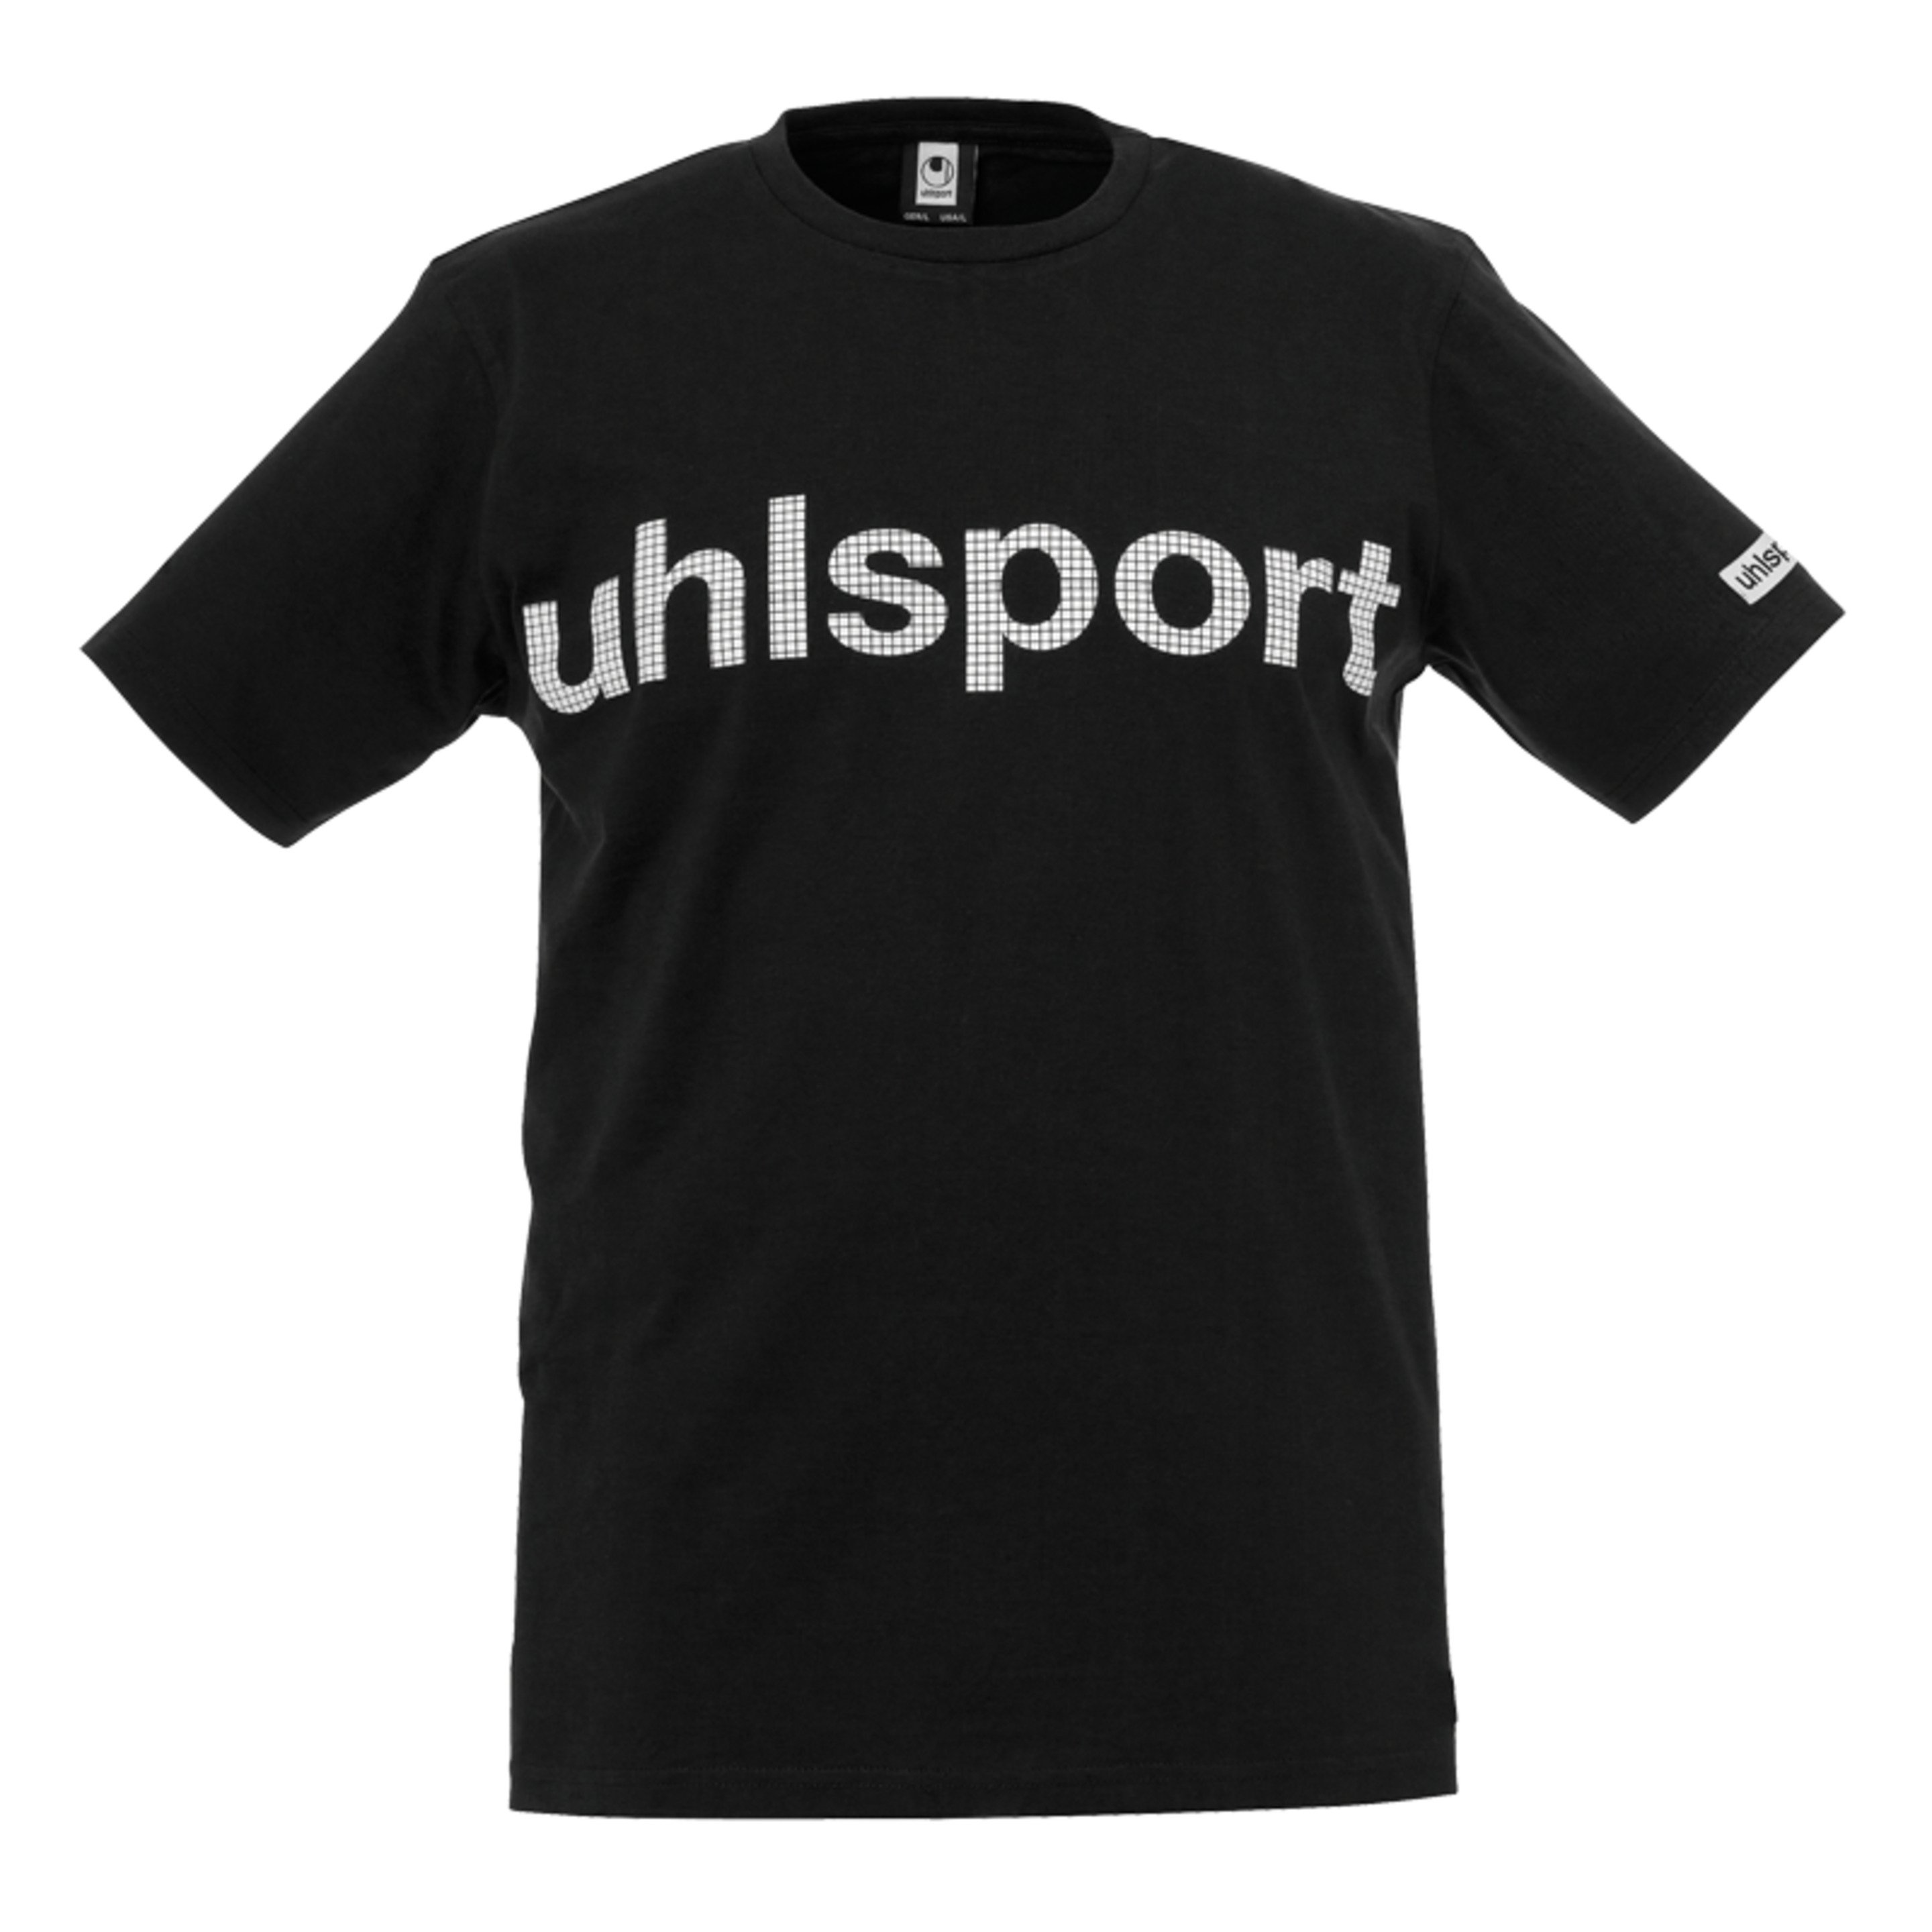 Essential Promo Camiseta Negro Uhlsport